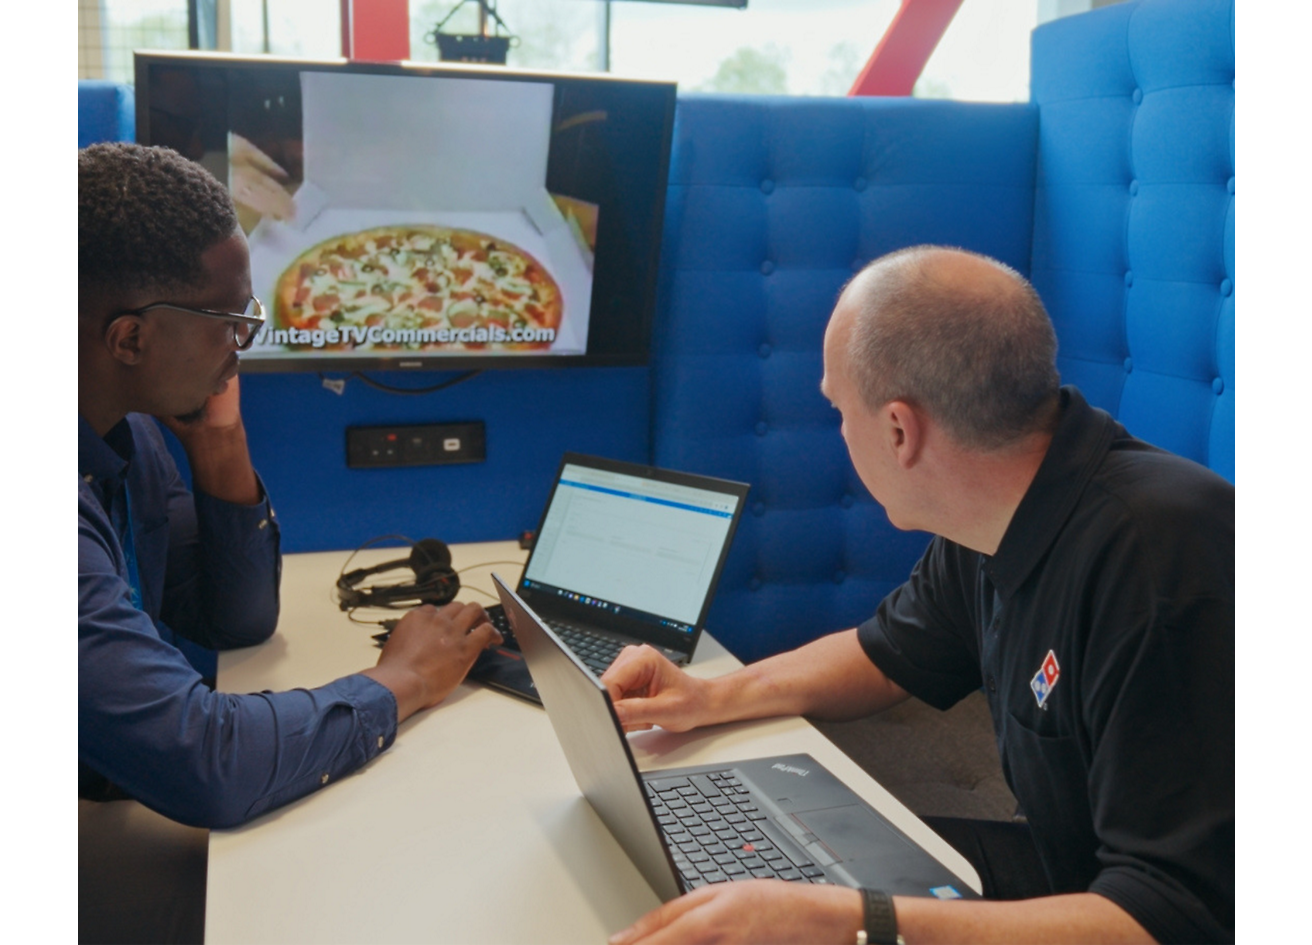 Zwei Personen sitzen mit Laptop und diskutieren über Domino’s Pizza